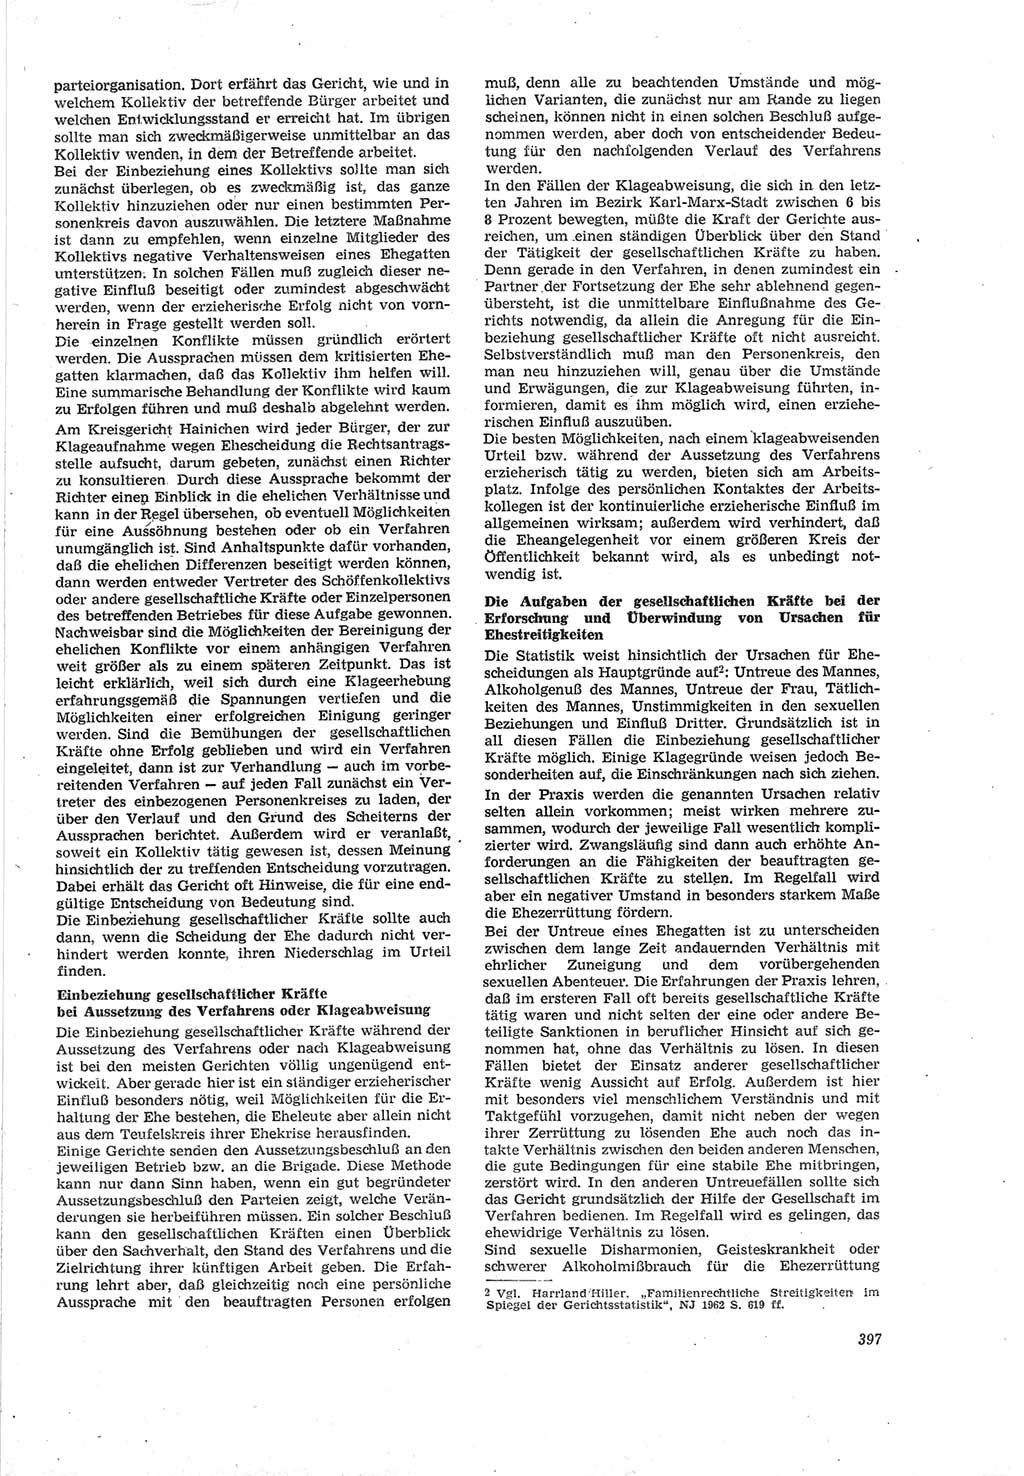 Neue Justiz (NJ), Zeitschrift für Recht und Rechtswissenschaft [Deutsche Demokratische Republik (DDR)], 18. Jahrgang 1964, Seite 397 (NJ DDR 1964, S. 397)